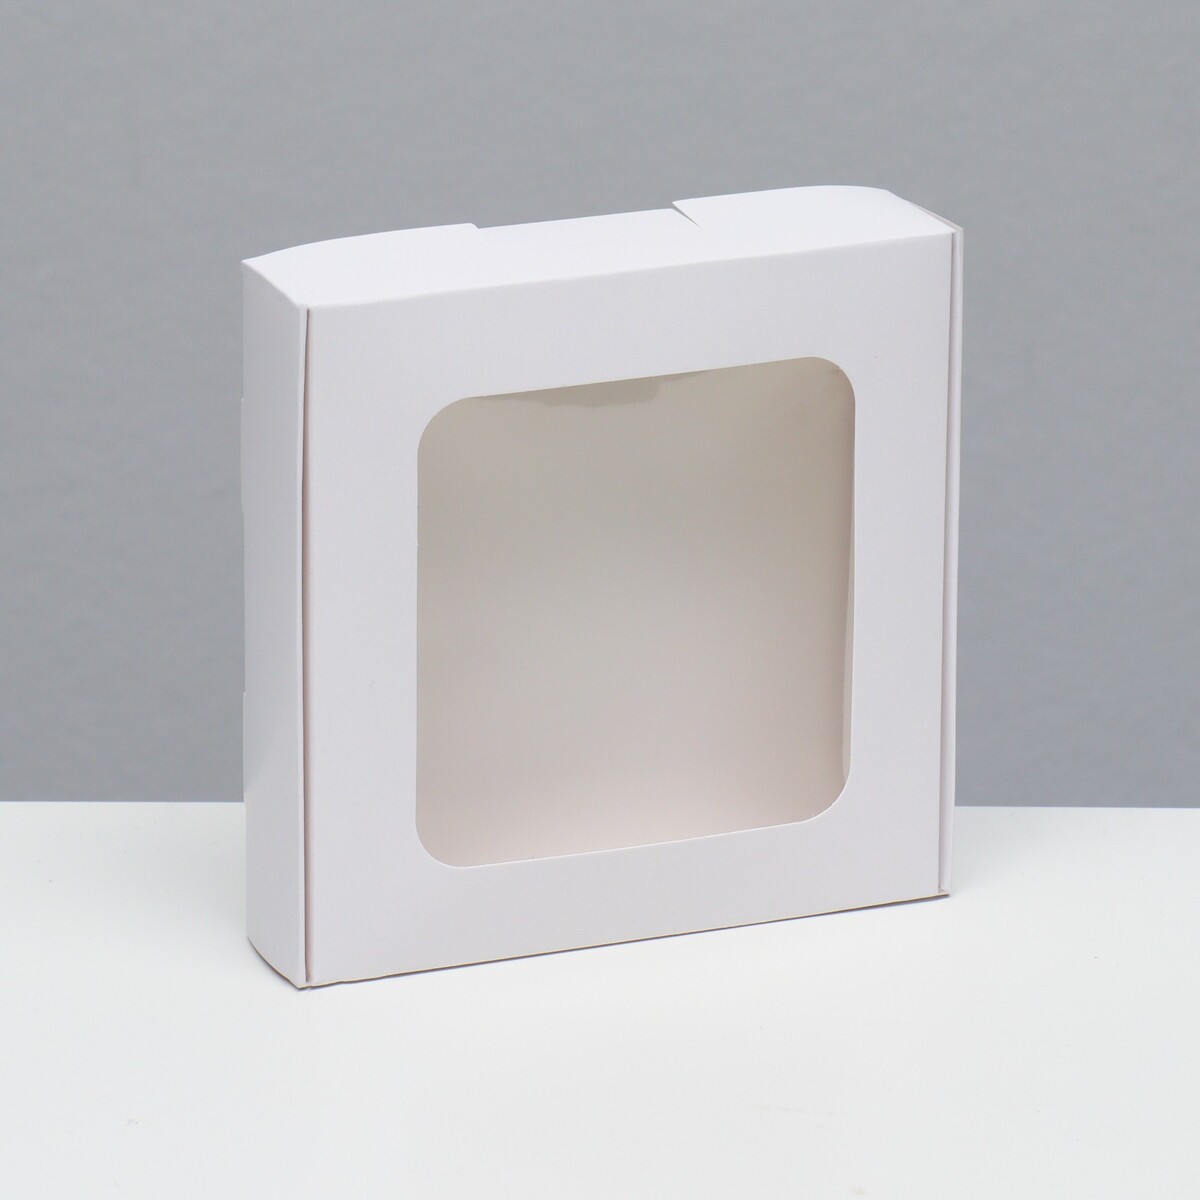 Коробка самосборная, белая, 13 х 13 х 3 см коробка самосборная белая 13 х 13 х 3 см